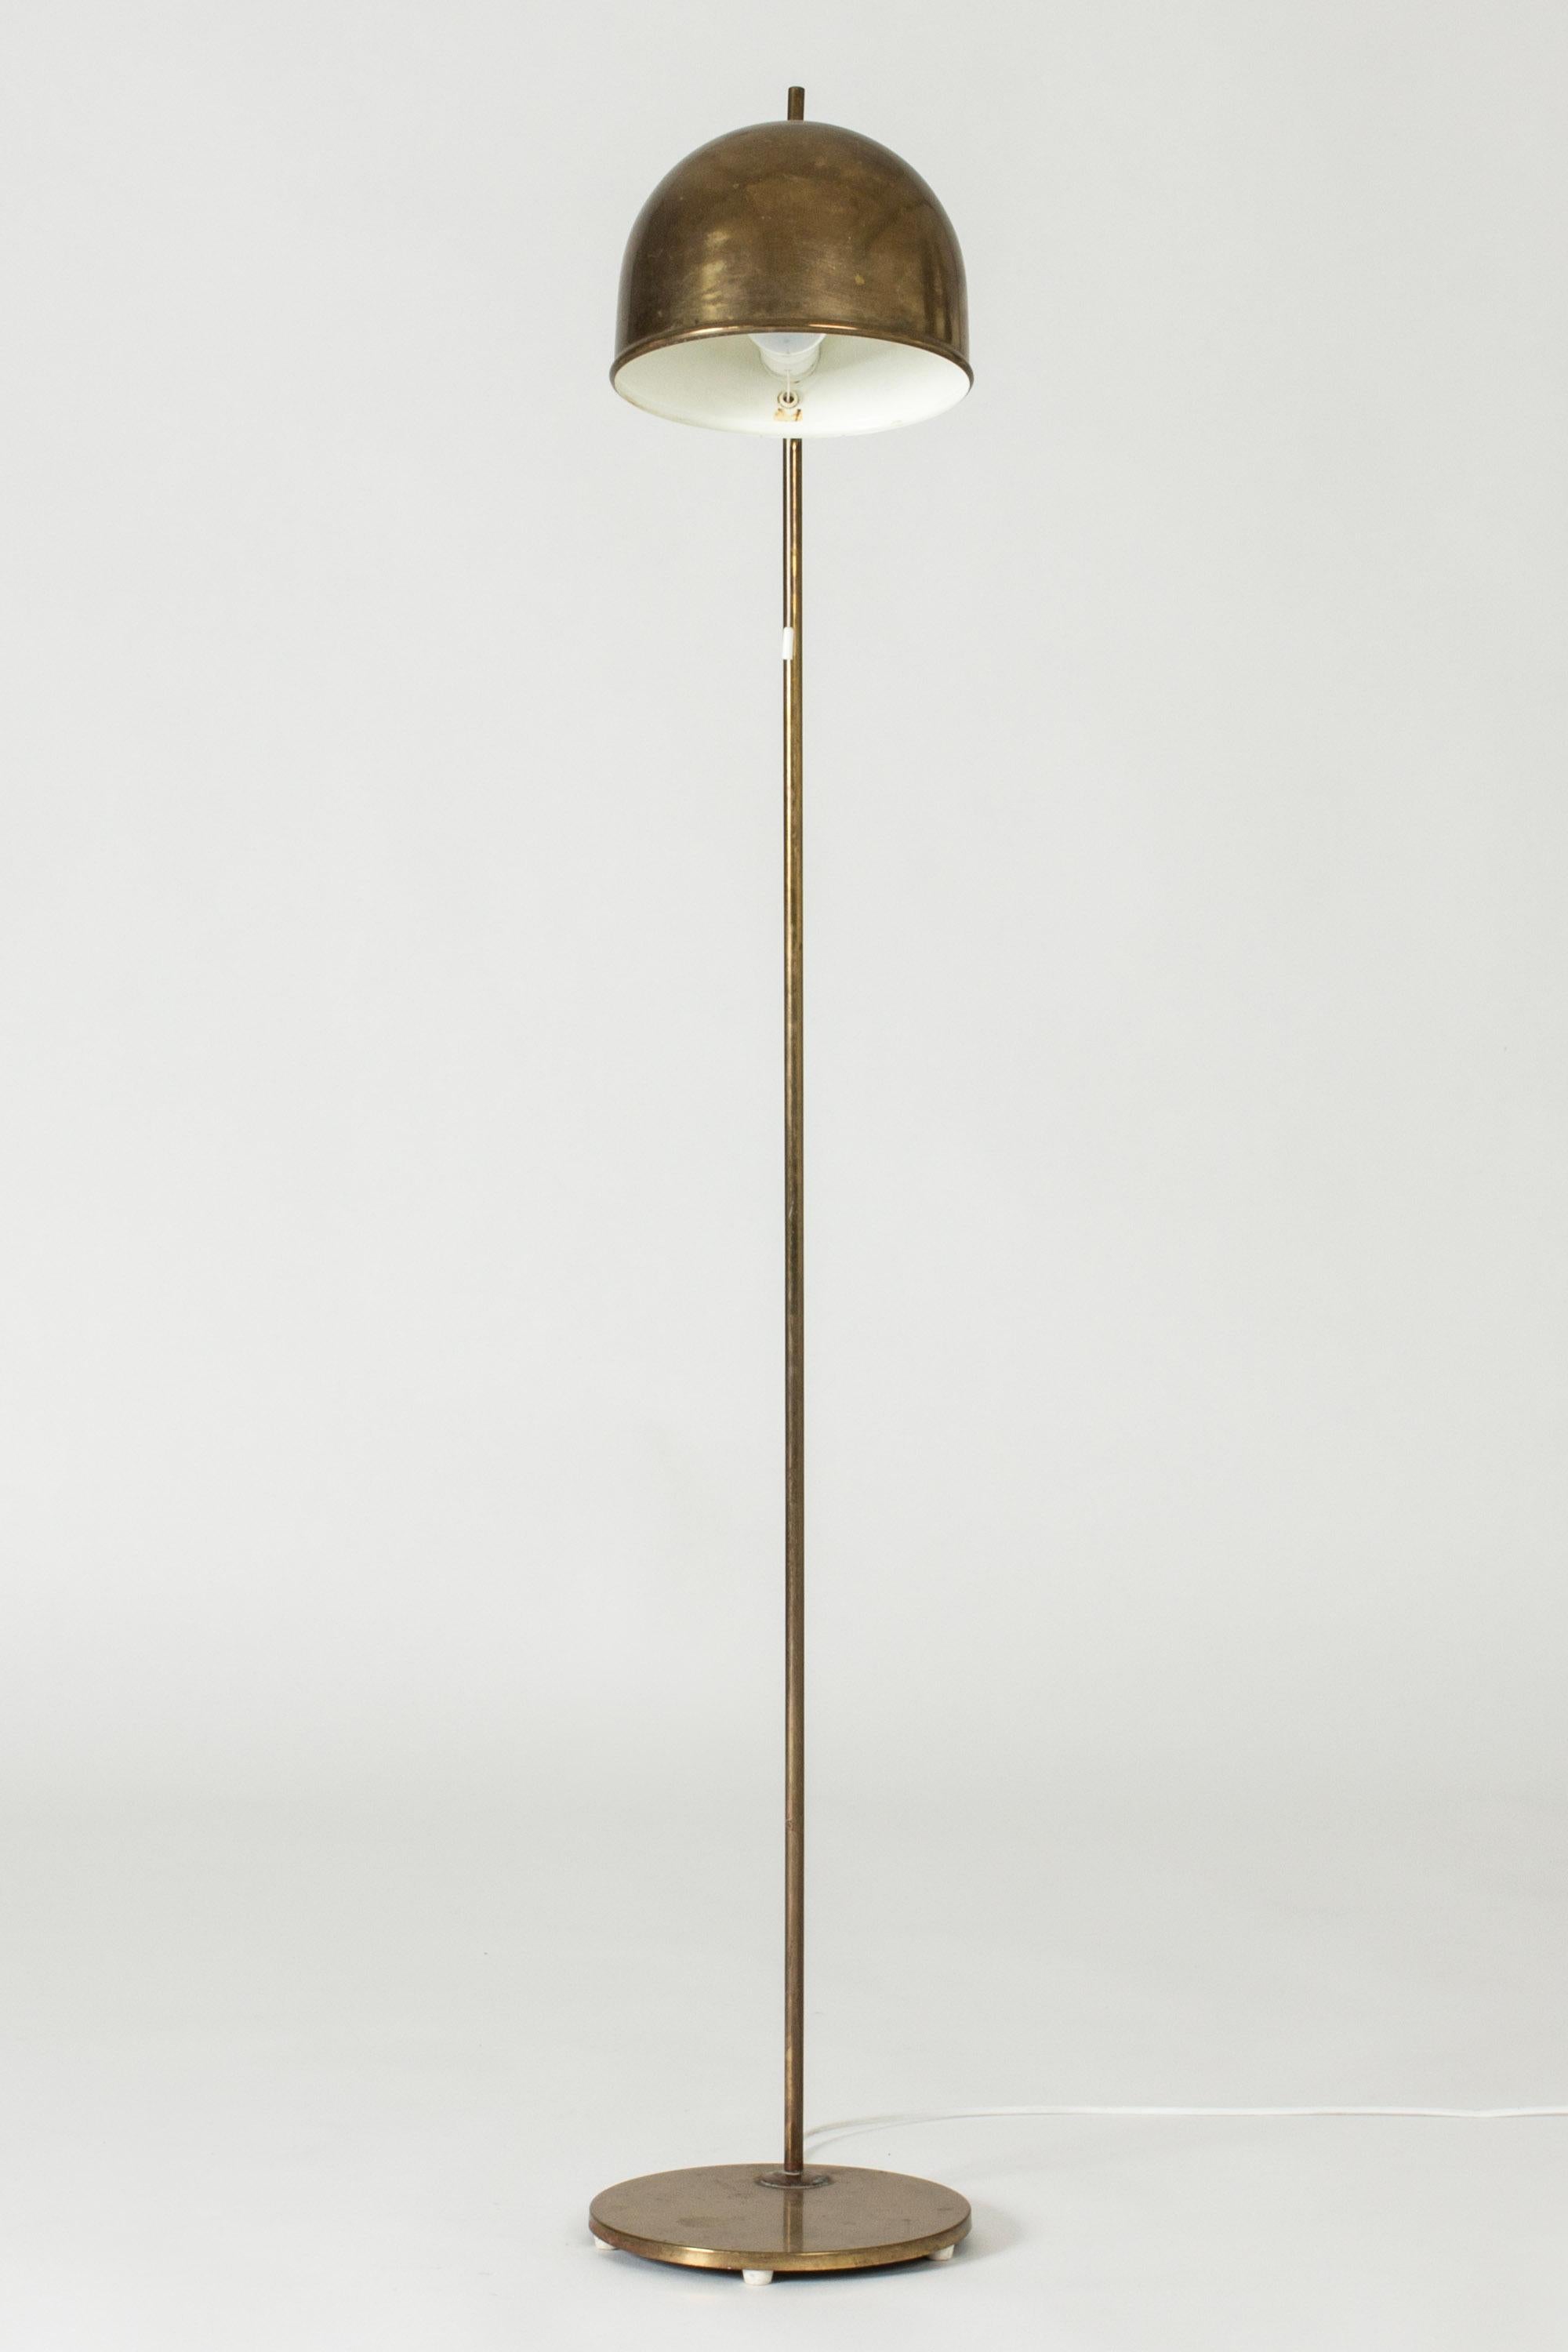 Stehlampe aus Messing von Bergboms mit schlichtem, abgerundetem Design, das durch eine kleine Spitze am oberen Ende des Lampenschirms abgerundet wird.